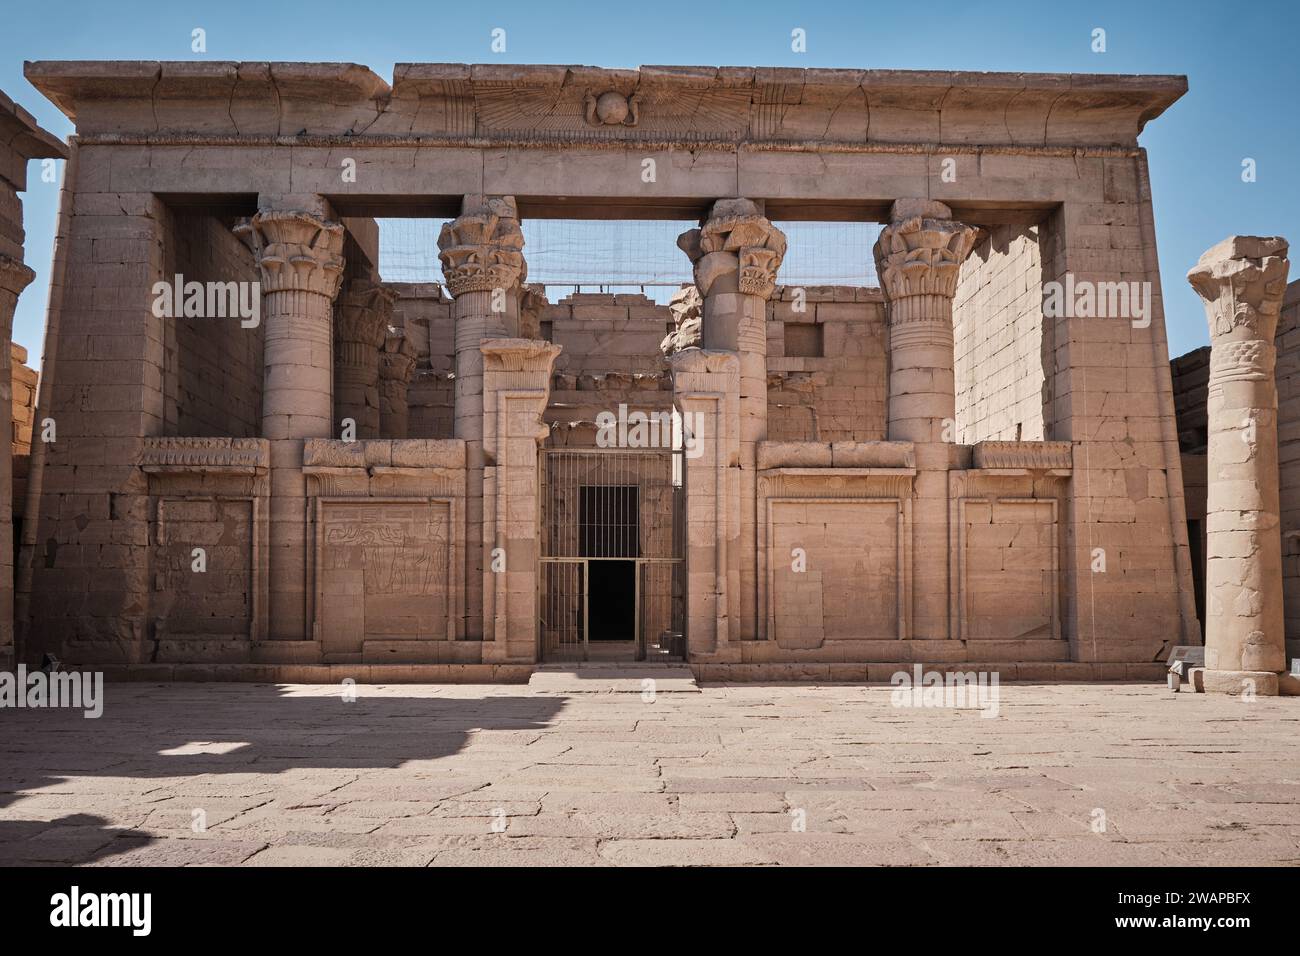 Tempio di Kalabsha ad Assuan, l'Egitto è un antico tempio egizio originariamente situato a Bab al-Kalabsha (porta di Kalabsha), 50 km a sud di Assuan Foto Stock